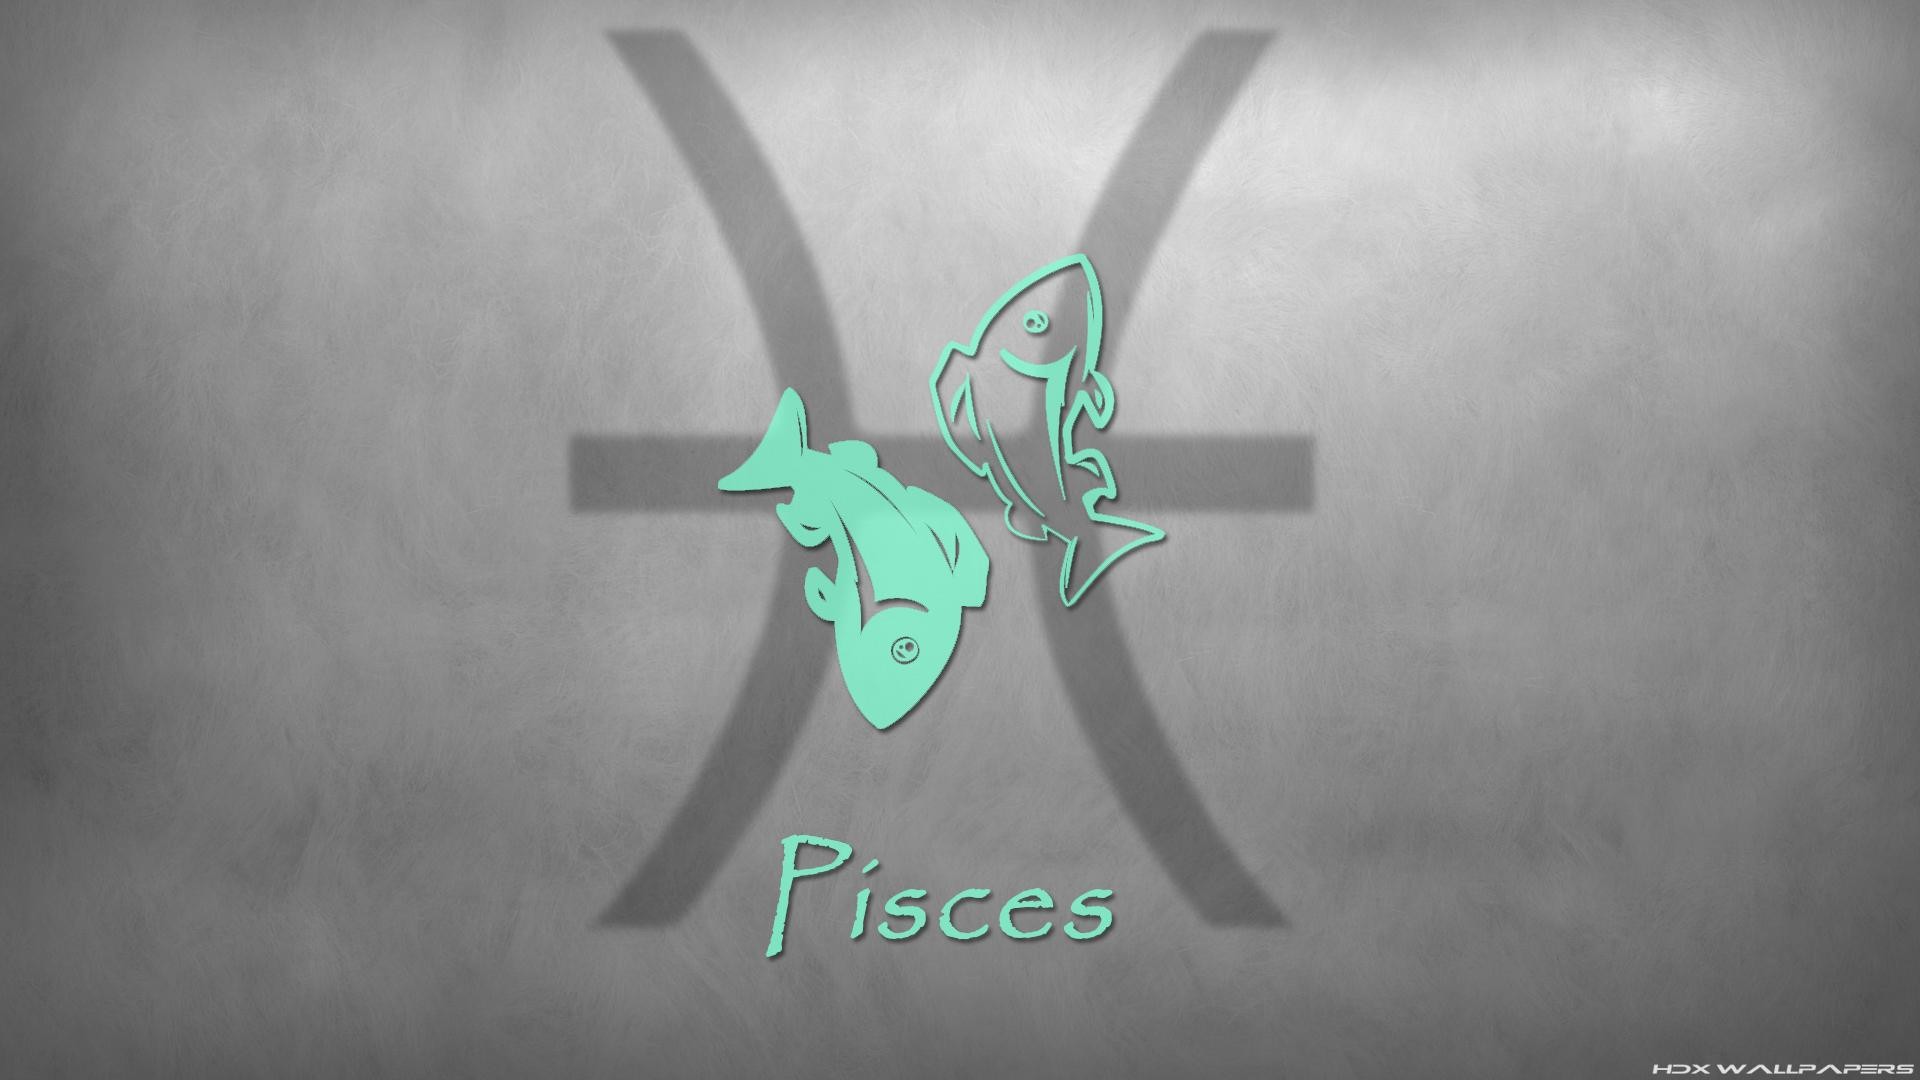 Pisces Wallpaper Hd - Emblem - HD Wallpaper 